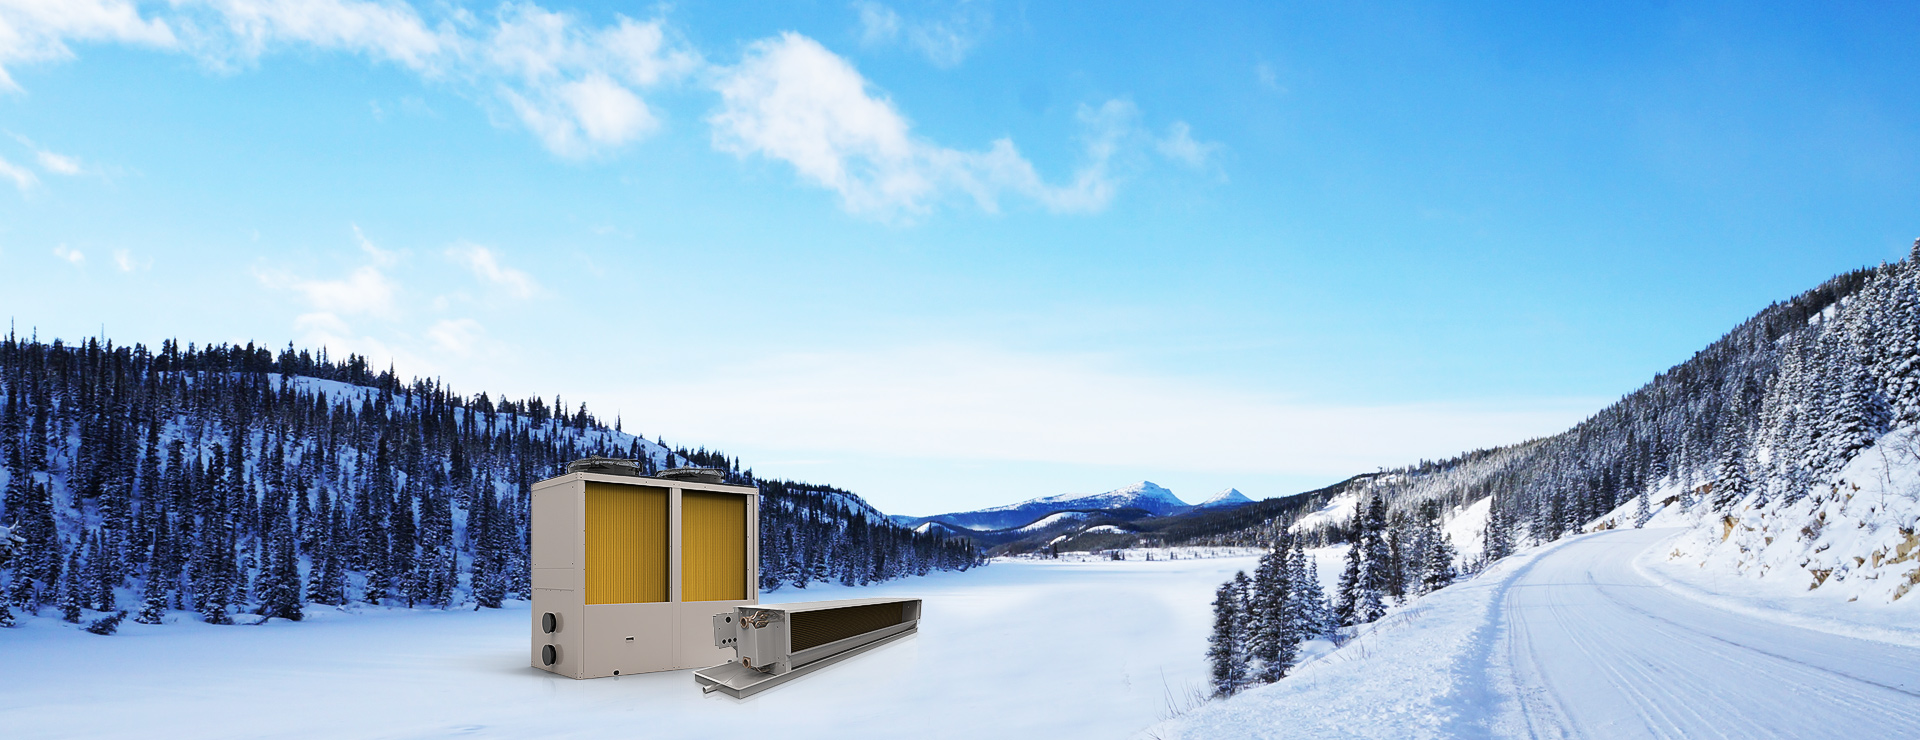 超低温北极星(采暖、热水) + 末端：专门针对寒冷地区采暖和热水需求设计，采暖热水一机解决，即安全方便又经济节能。